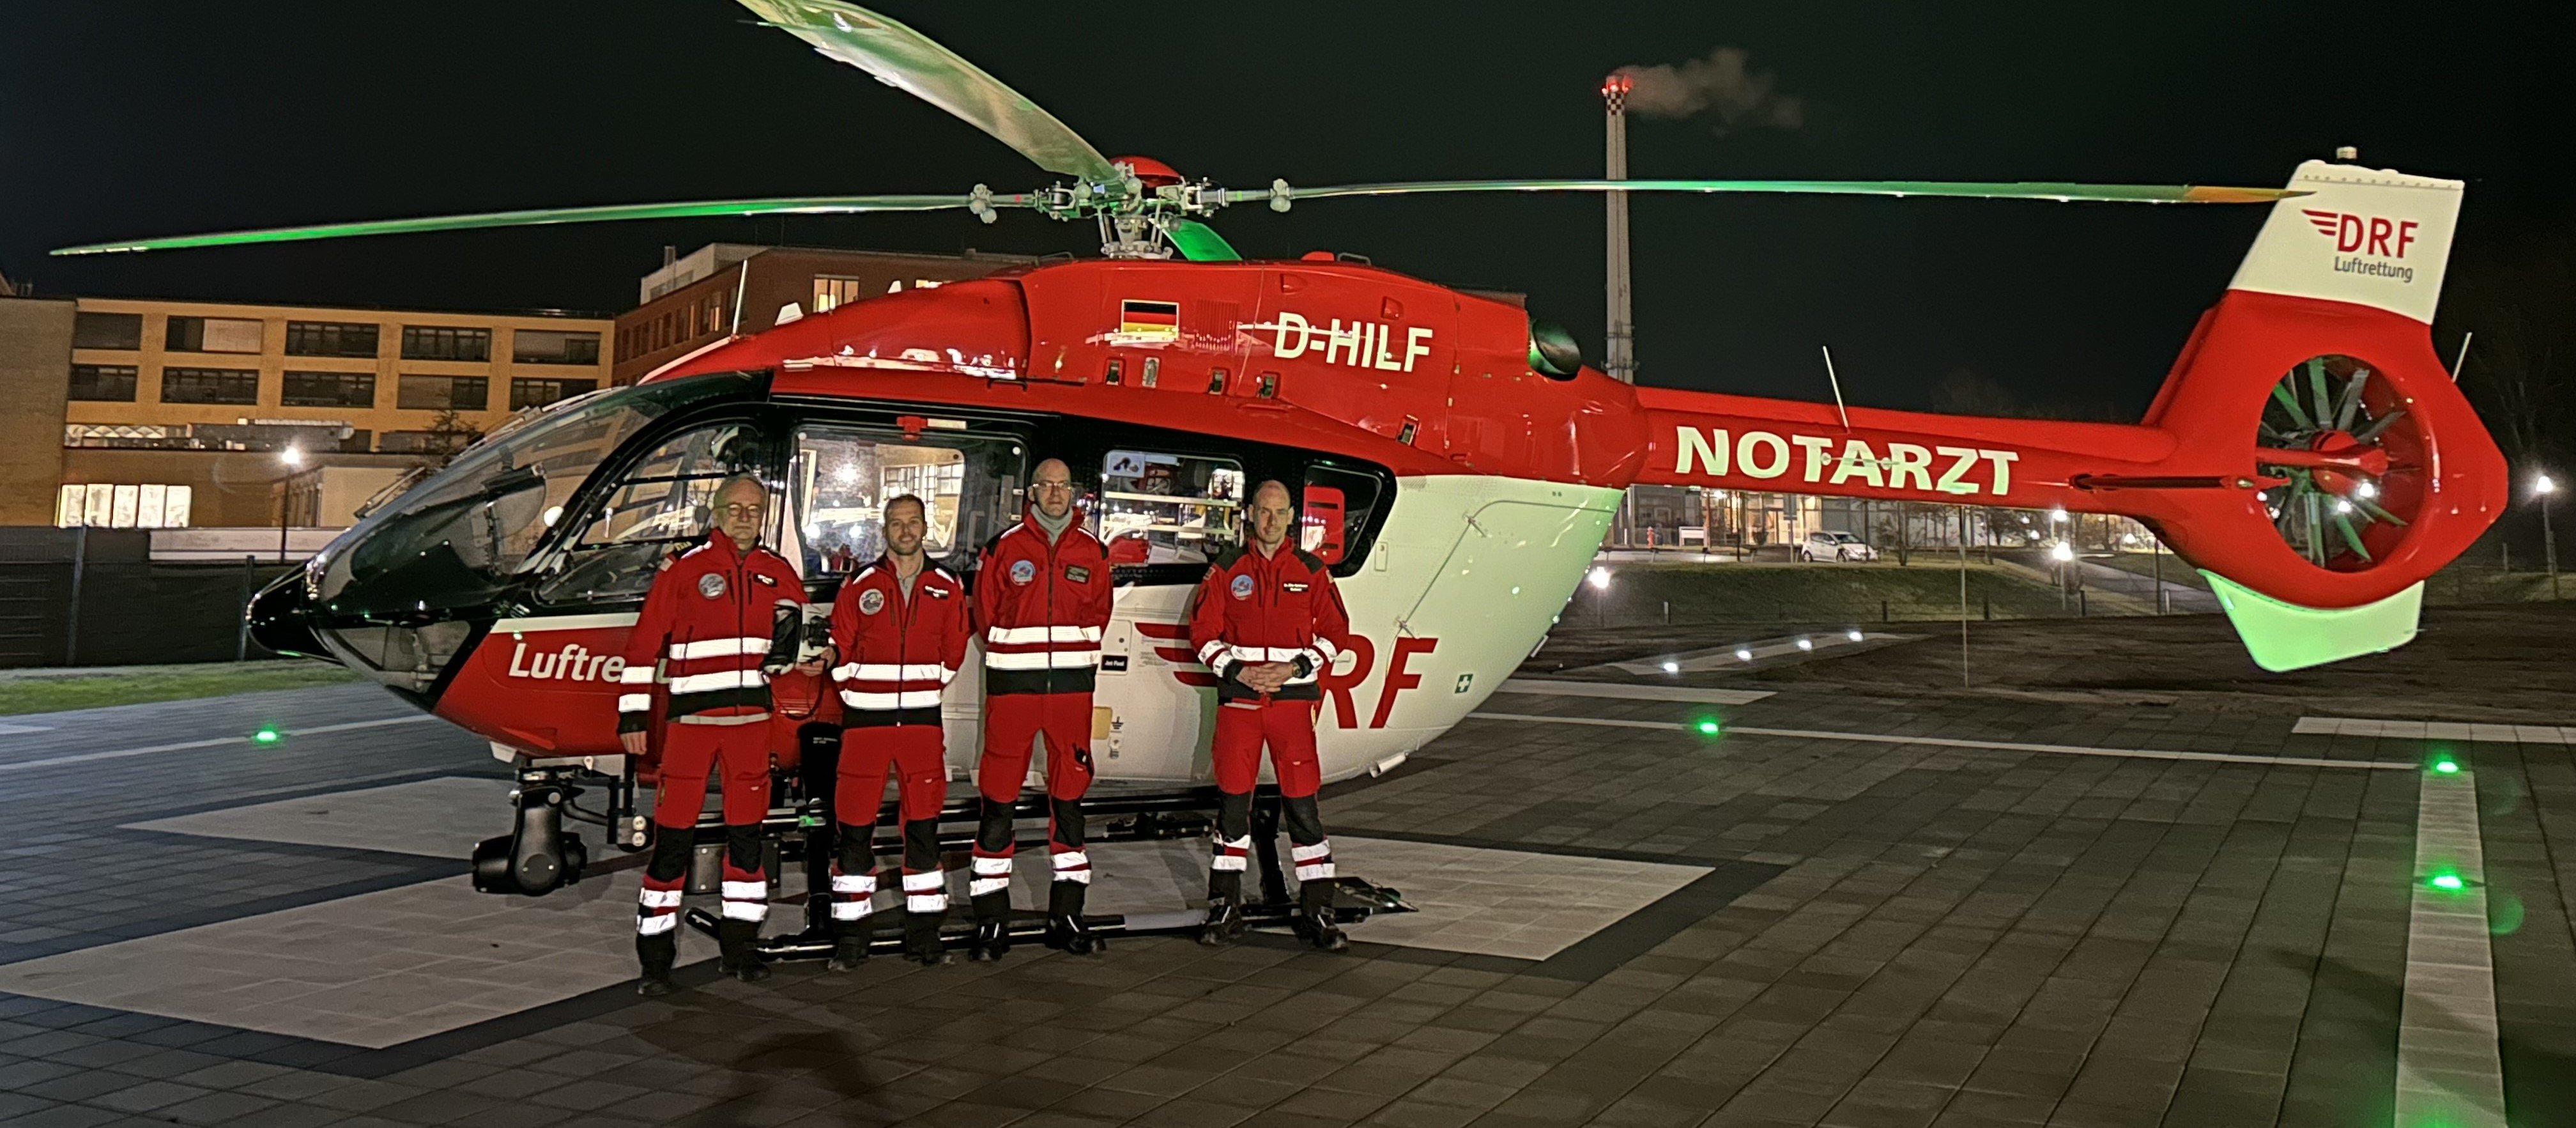 Eine vierköpfige Crew steht vor einem rot-weißen Hubschrauber der DRF Luftrettung